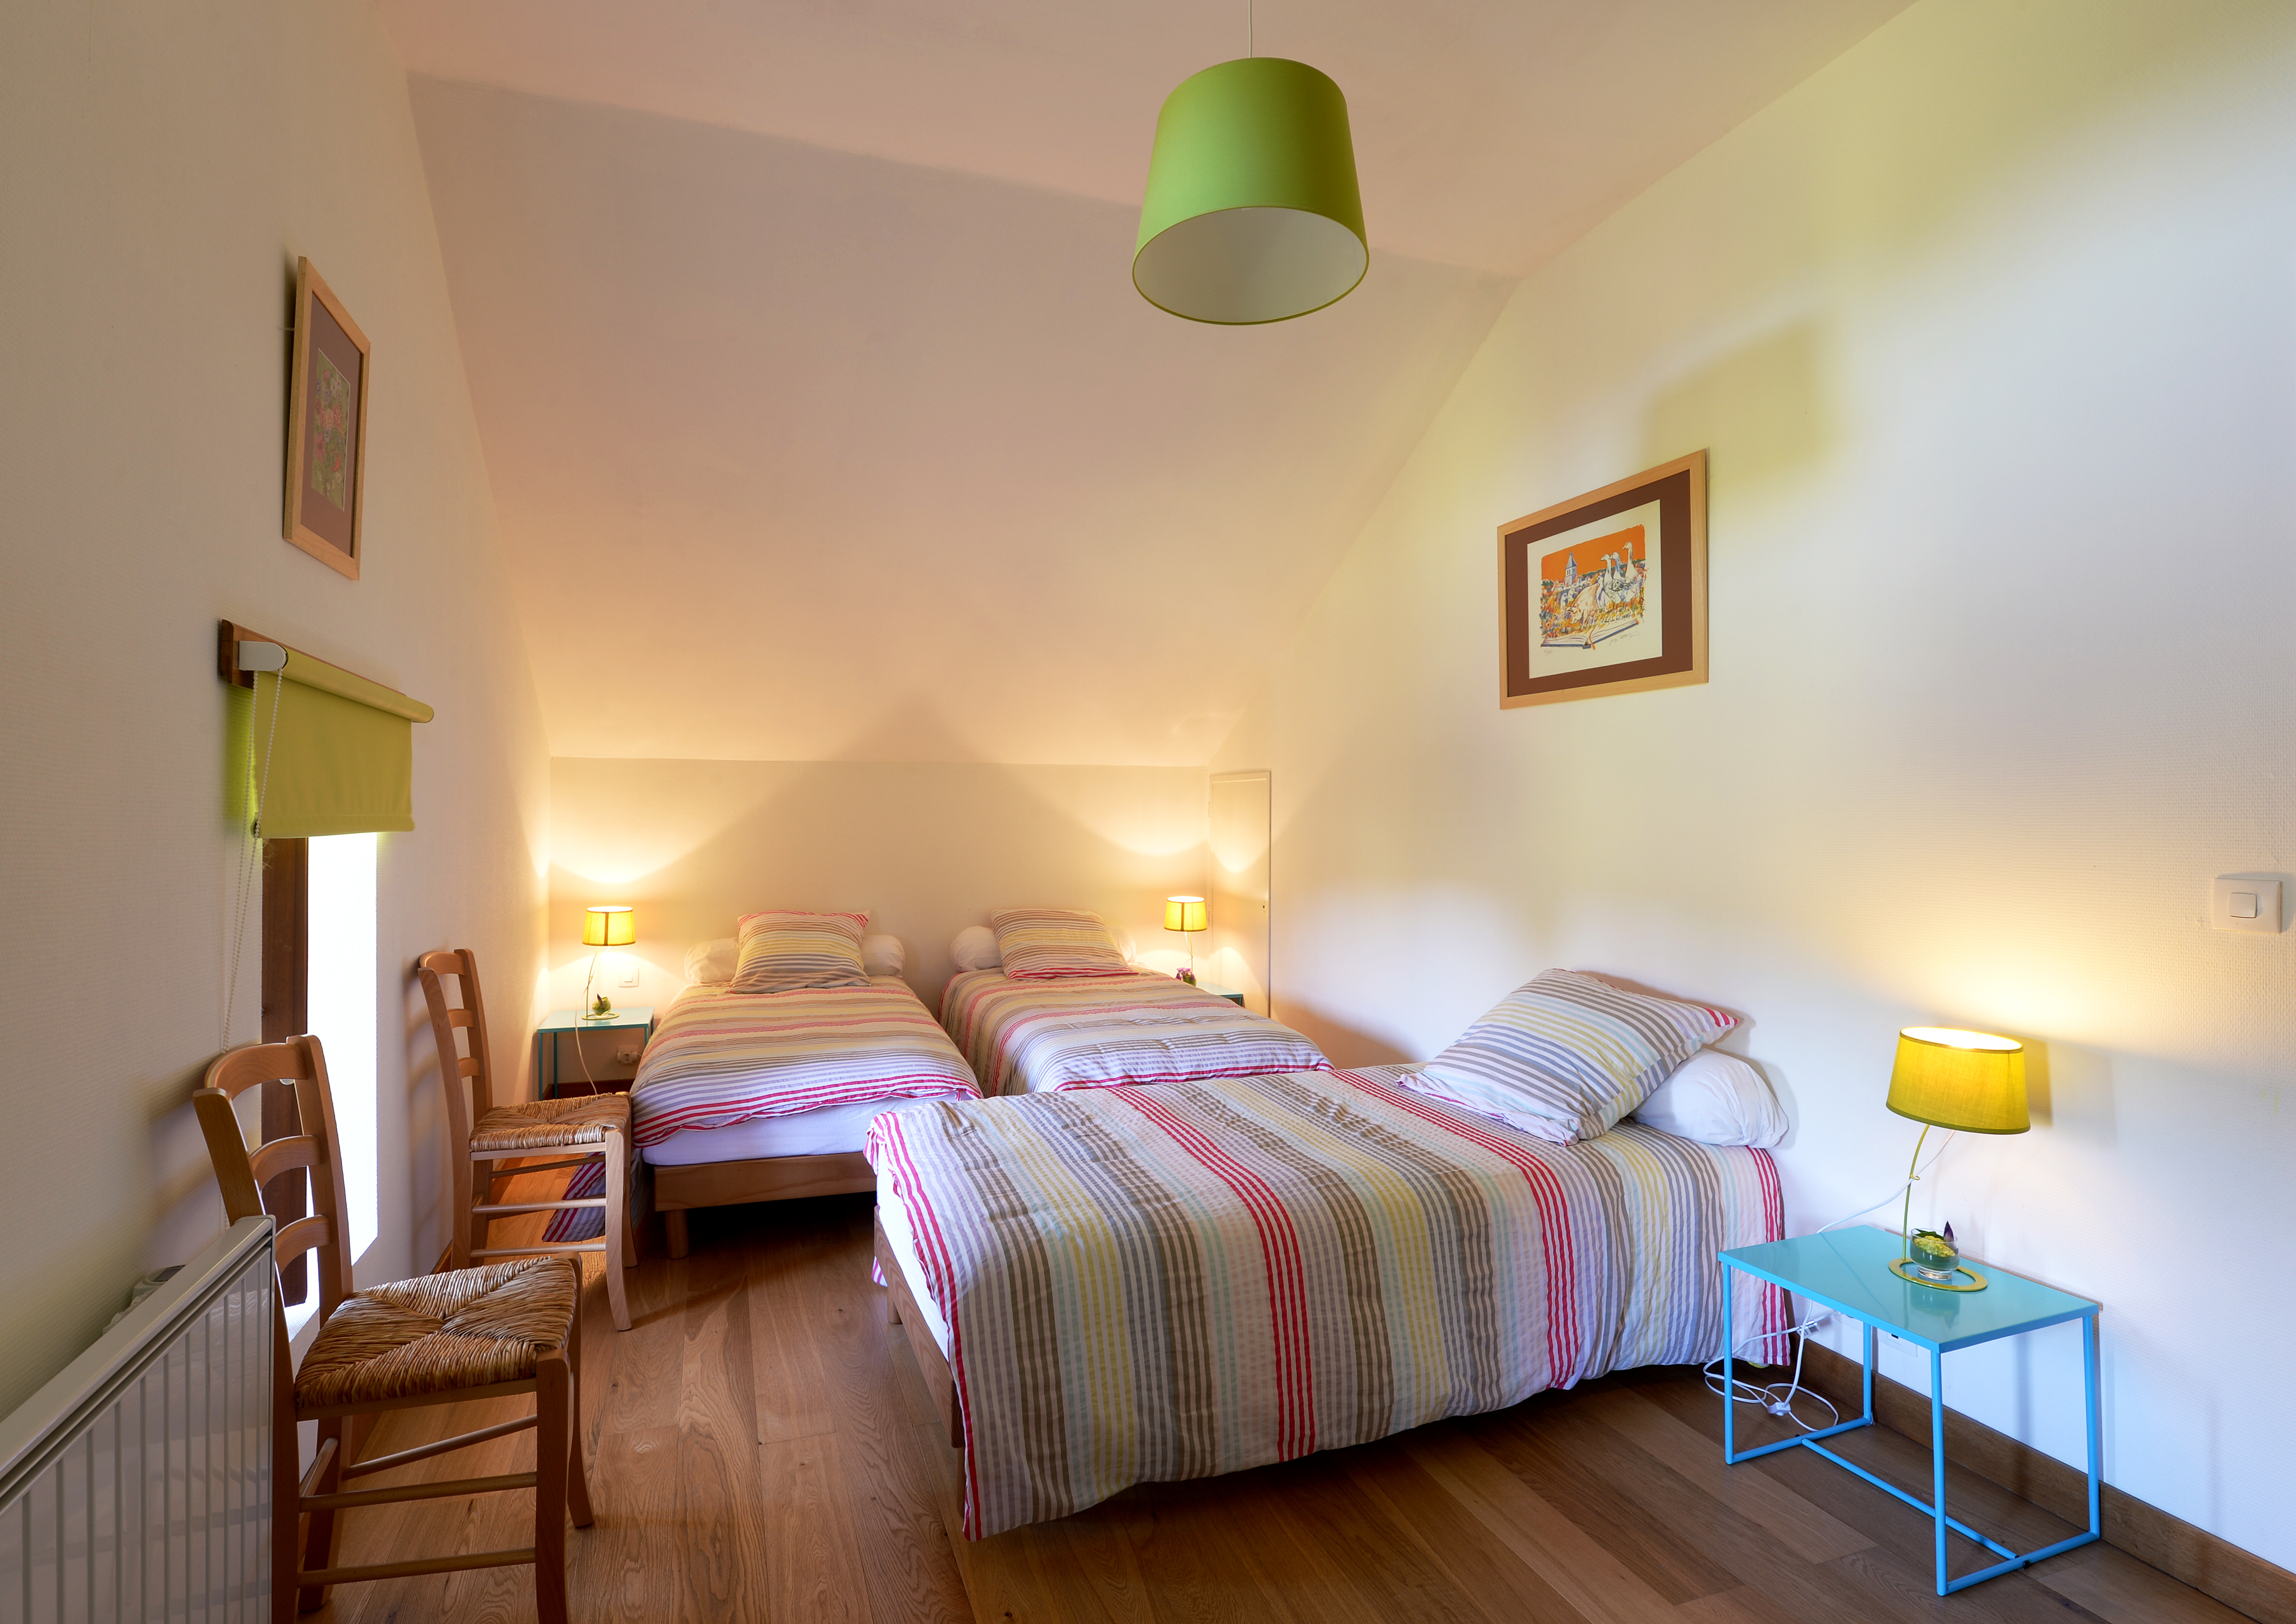 Chambre chaleureuse avec trois lits simples, décoration lumineuse et touches de couleur vive